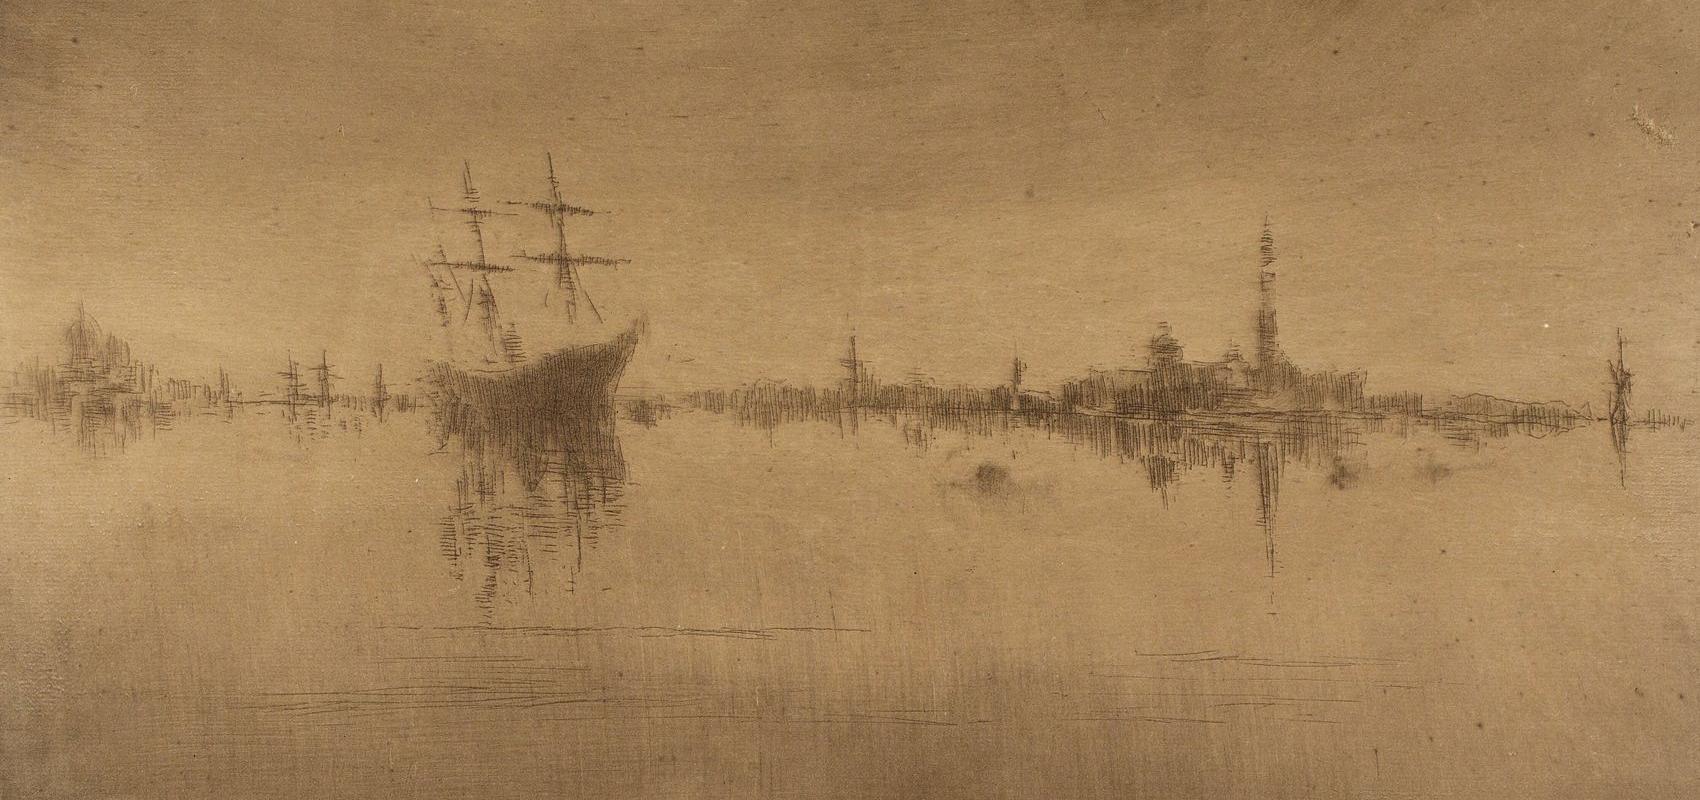 Nocturne de James McNeill Whistler -  - BnF, département des Estampes et de la photographie